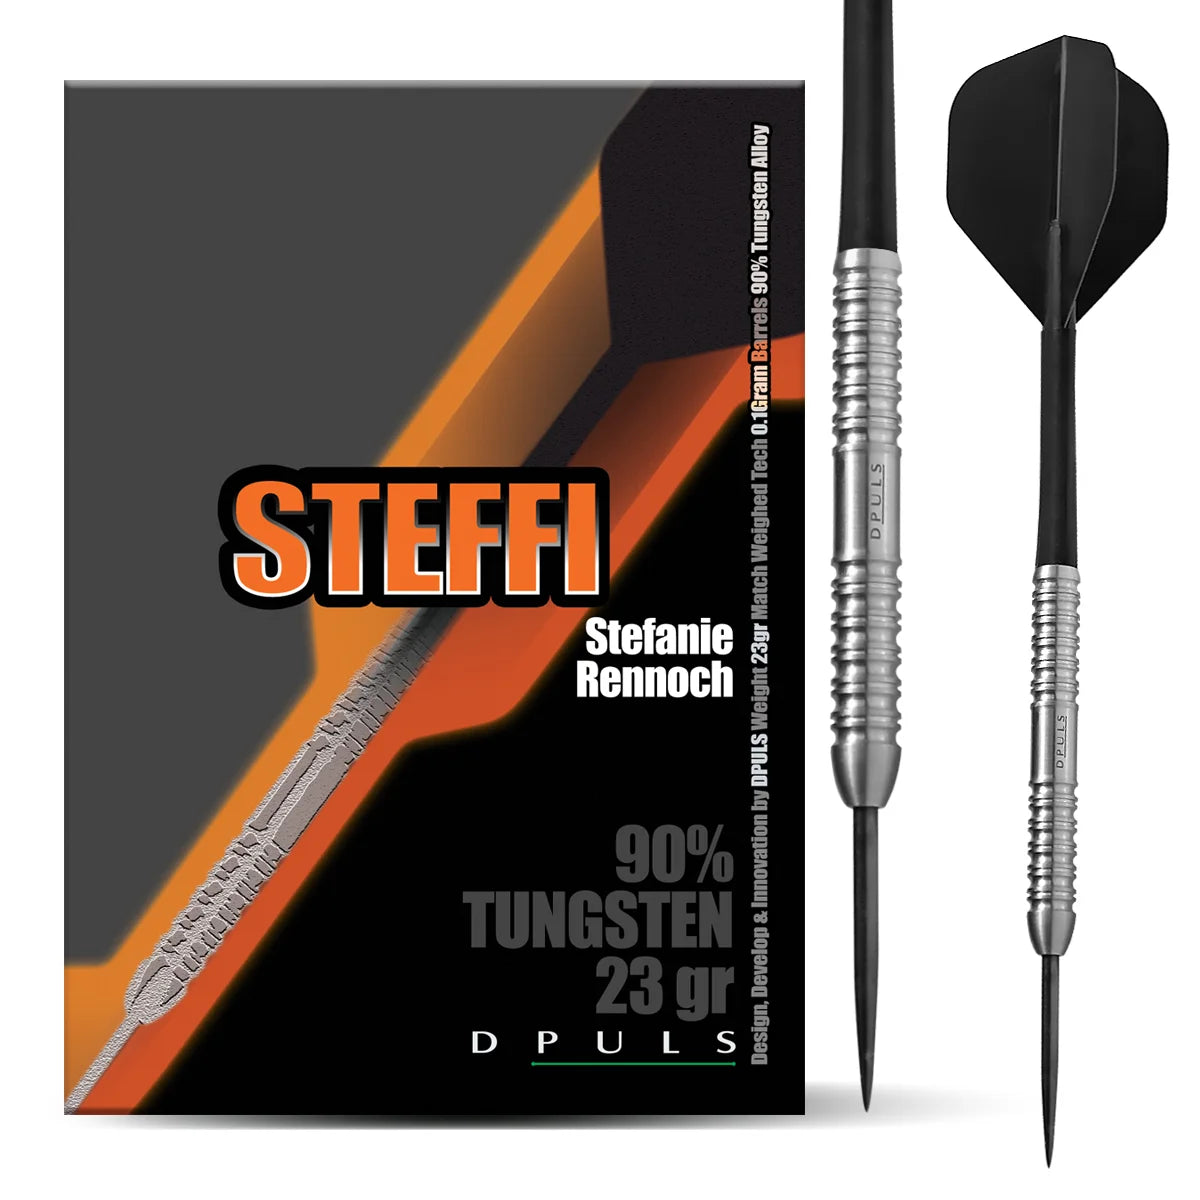 DPULS Steffi Steel Darts 23g/90%